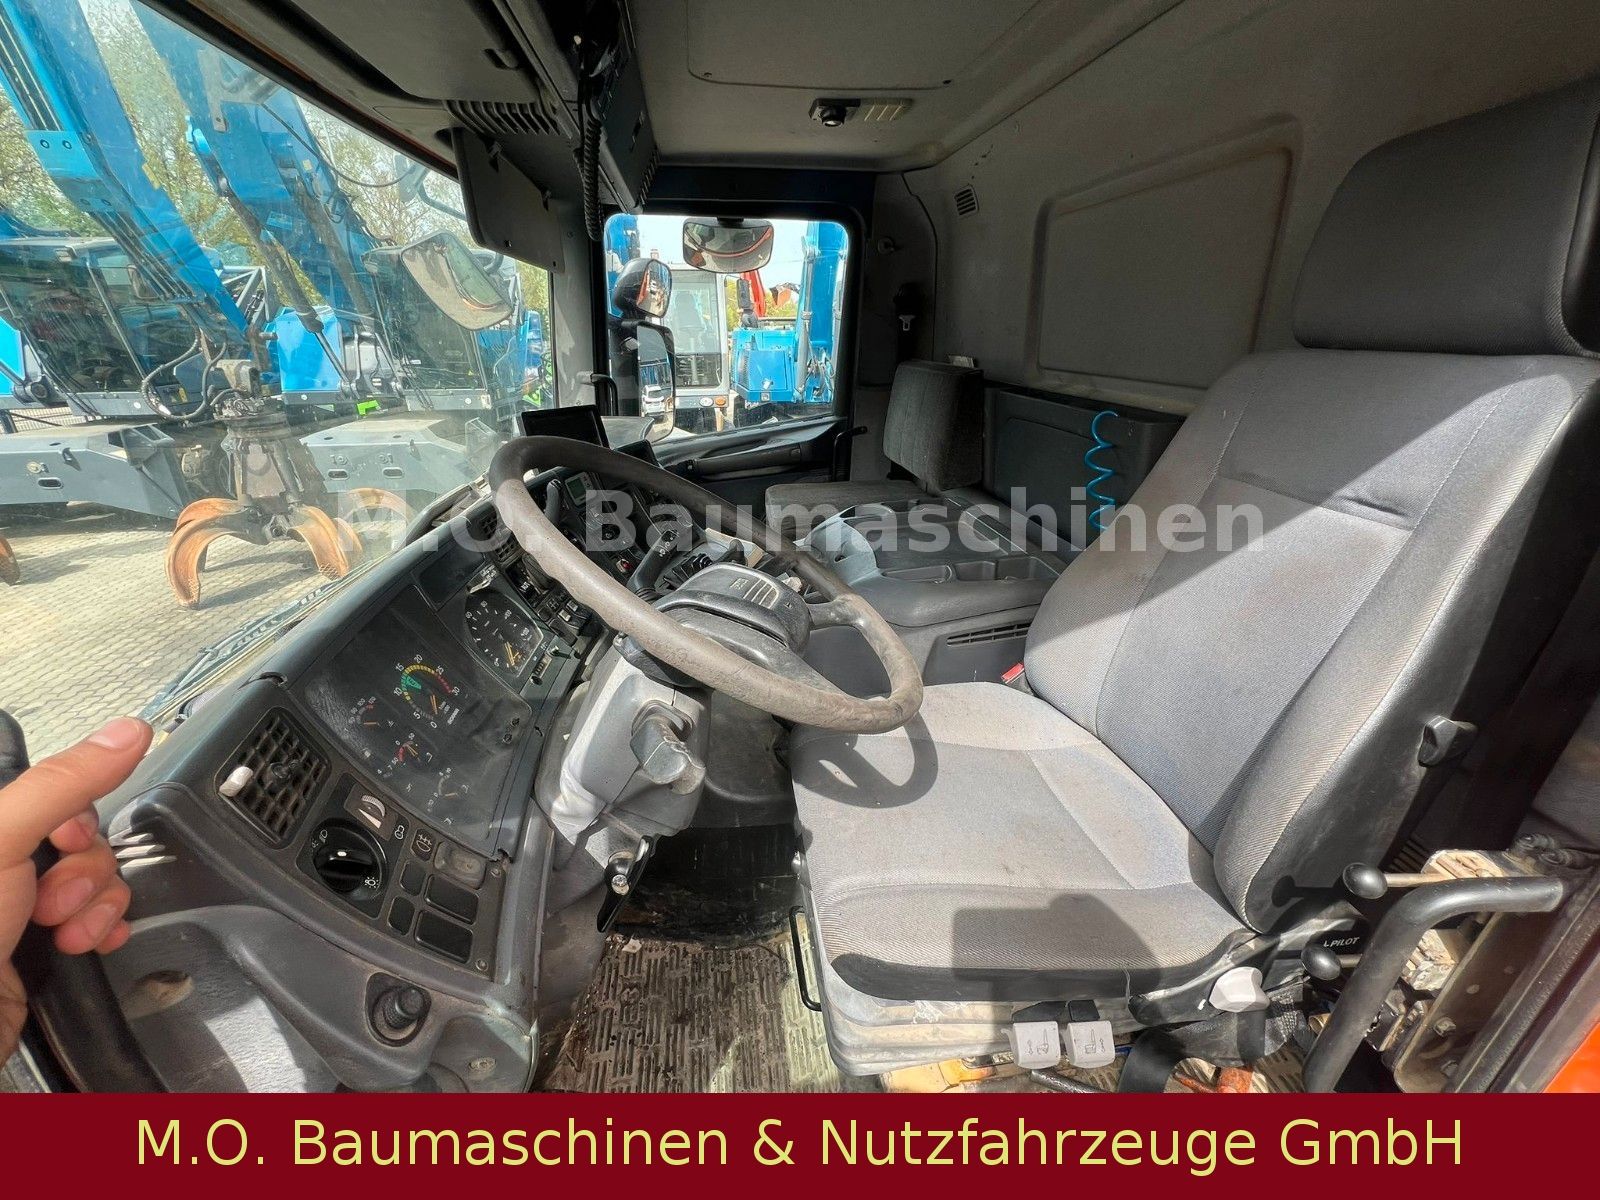 Fahrzeugabbildung Scania P 114 340 / 6x4 2. Seitenkipper / Bordmatik /